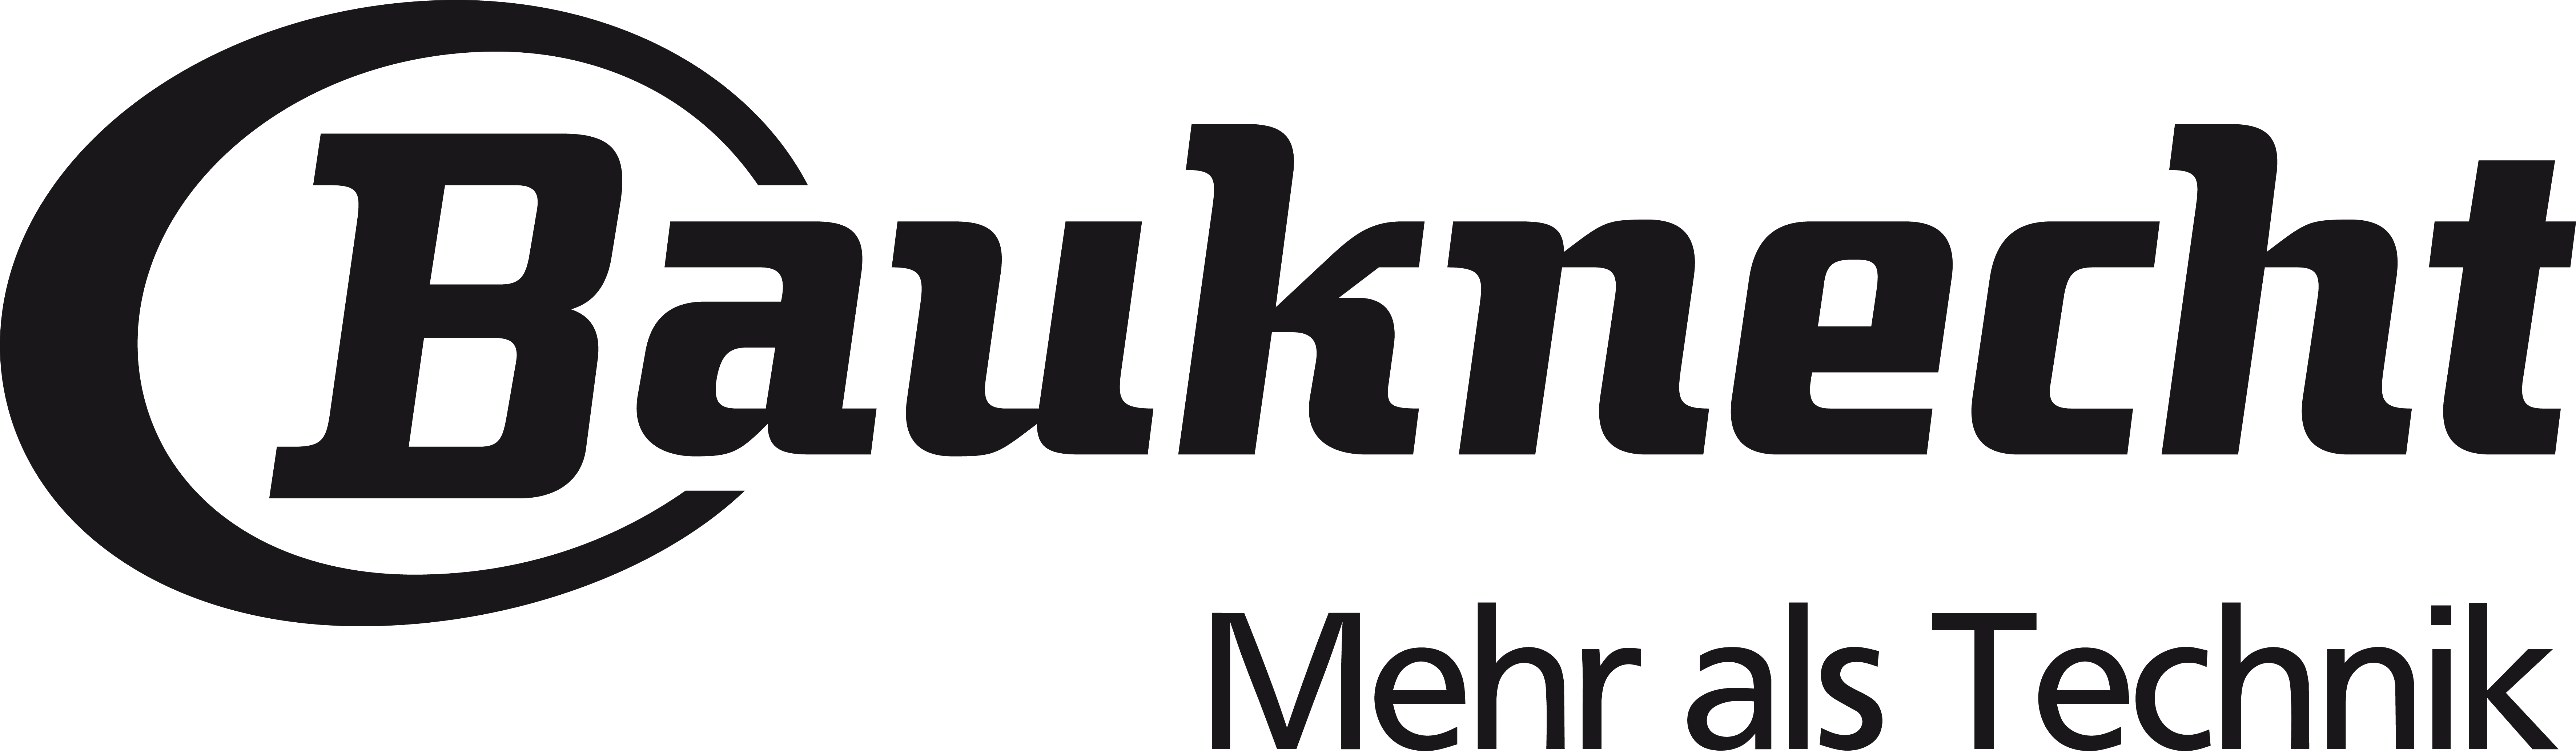 Bauknecht_logo.png